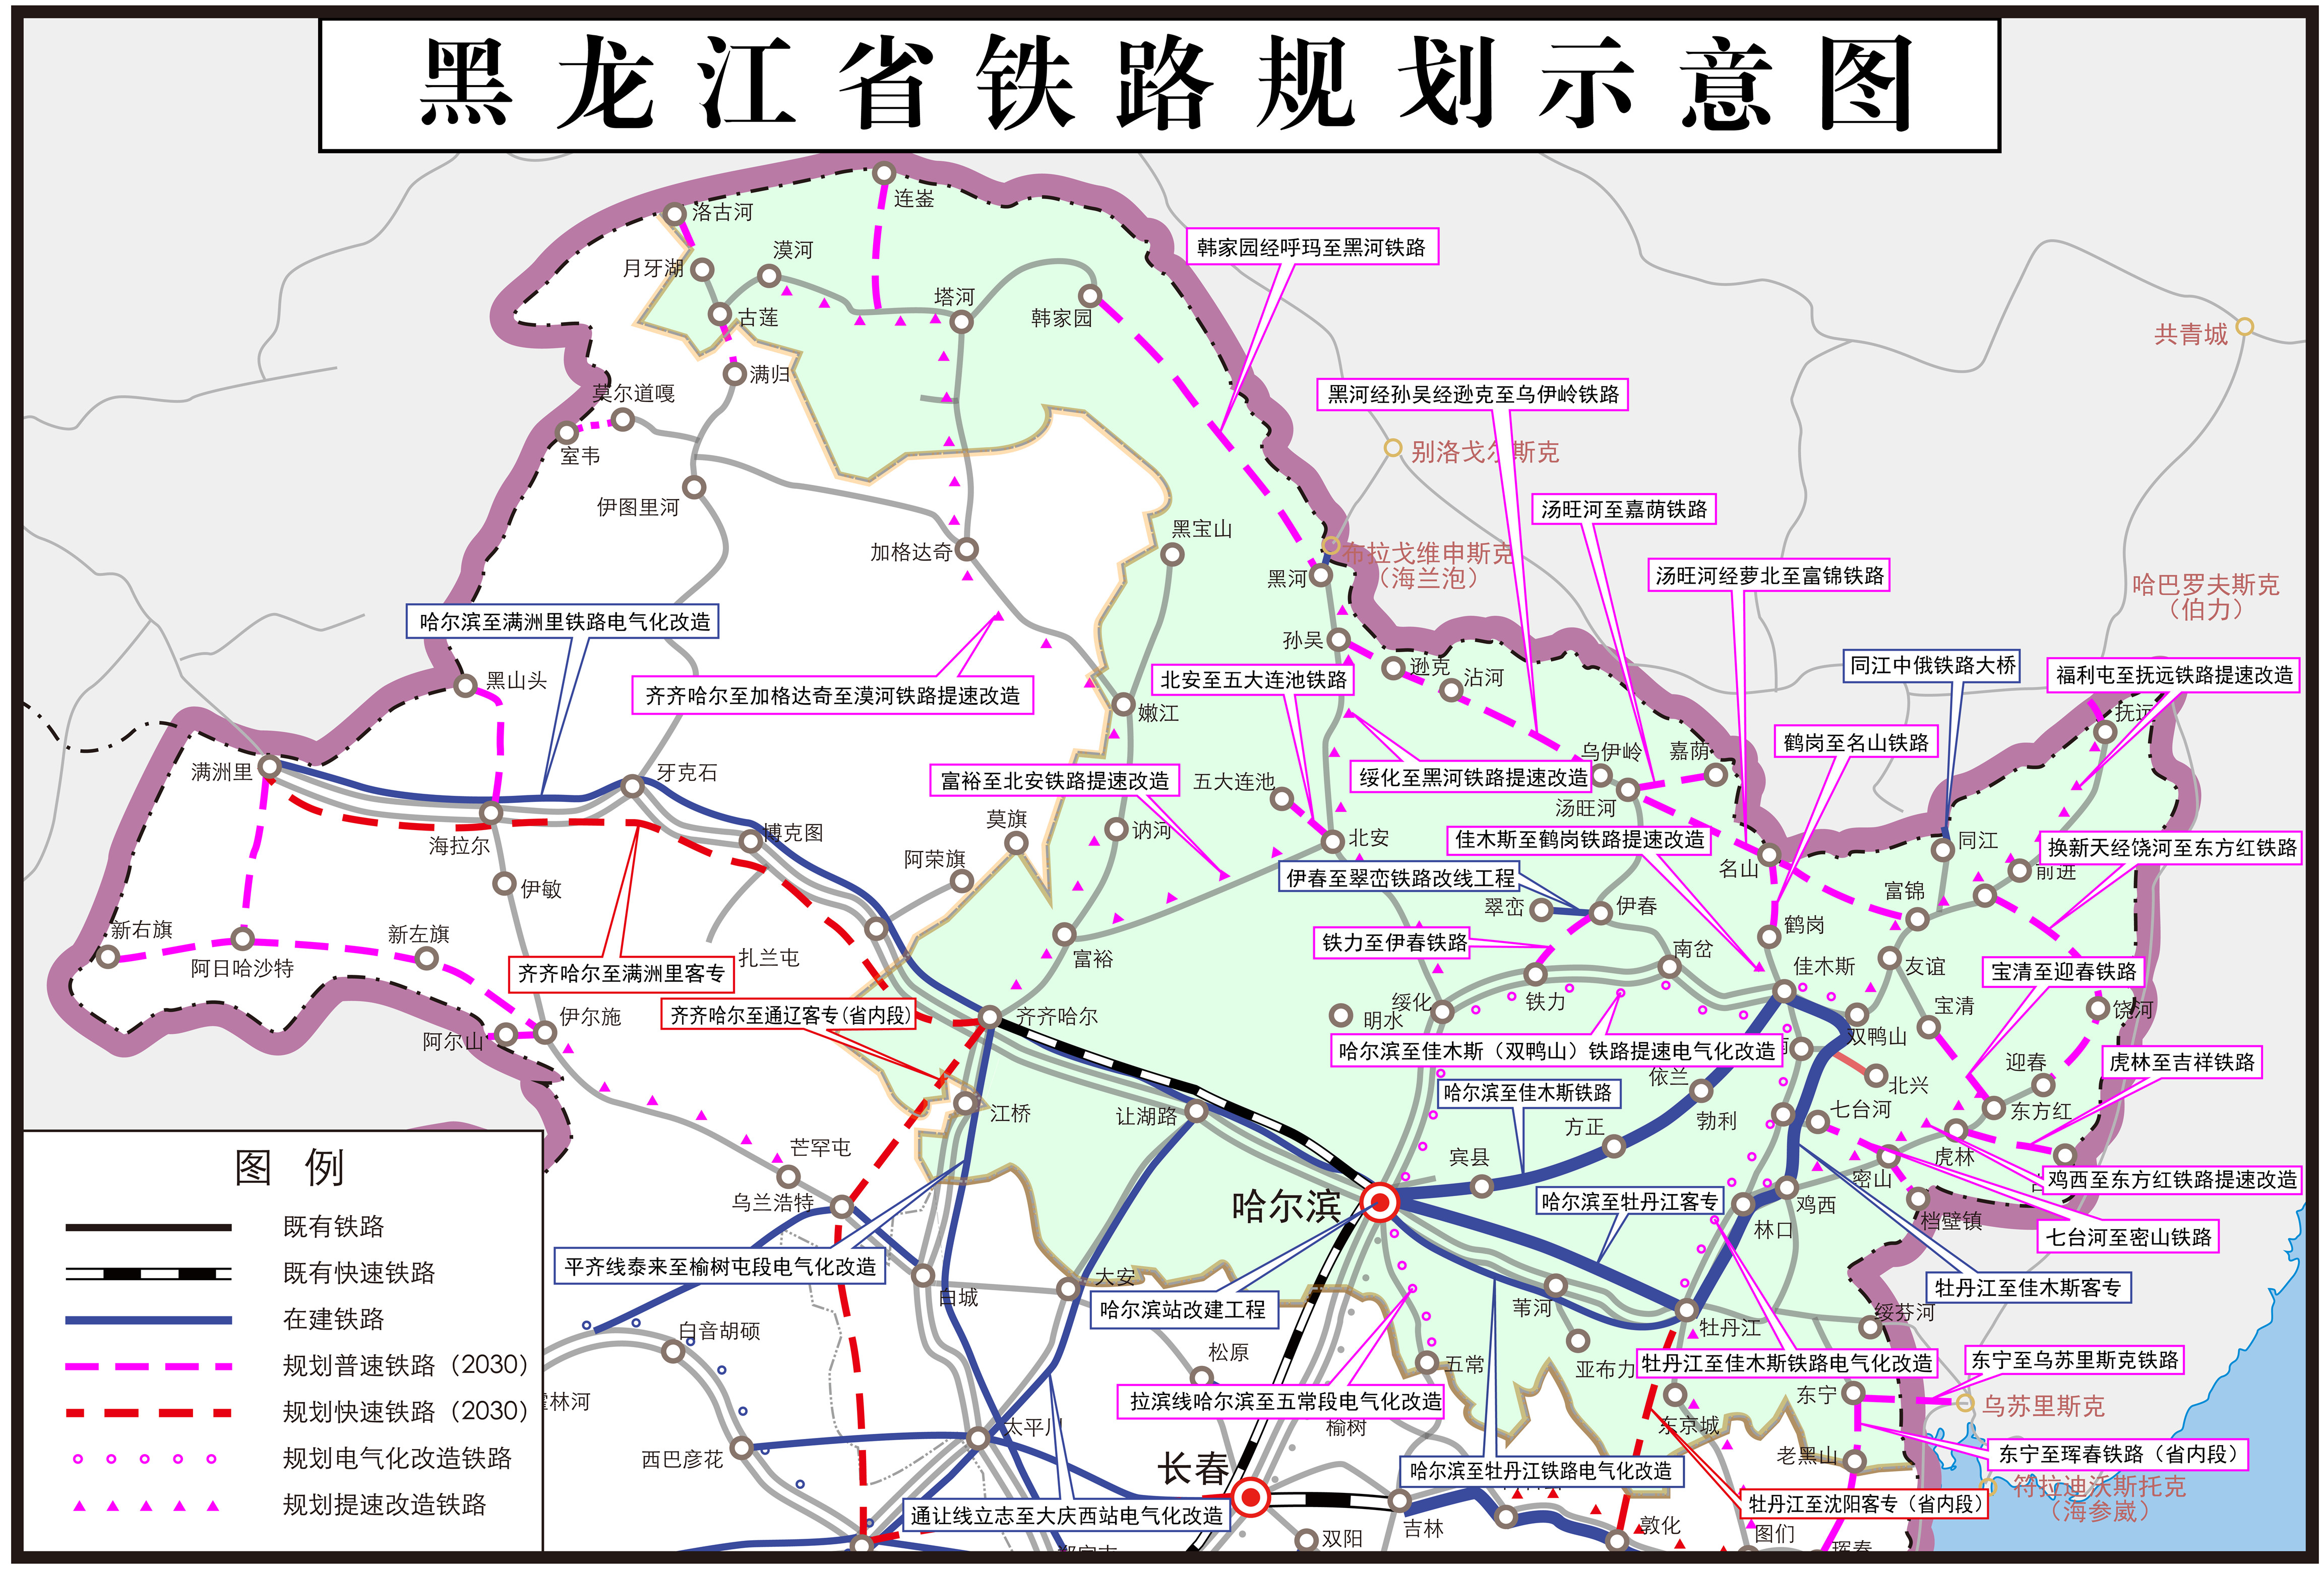 黑龙江省铁路分布图图片